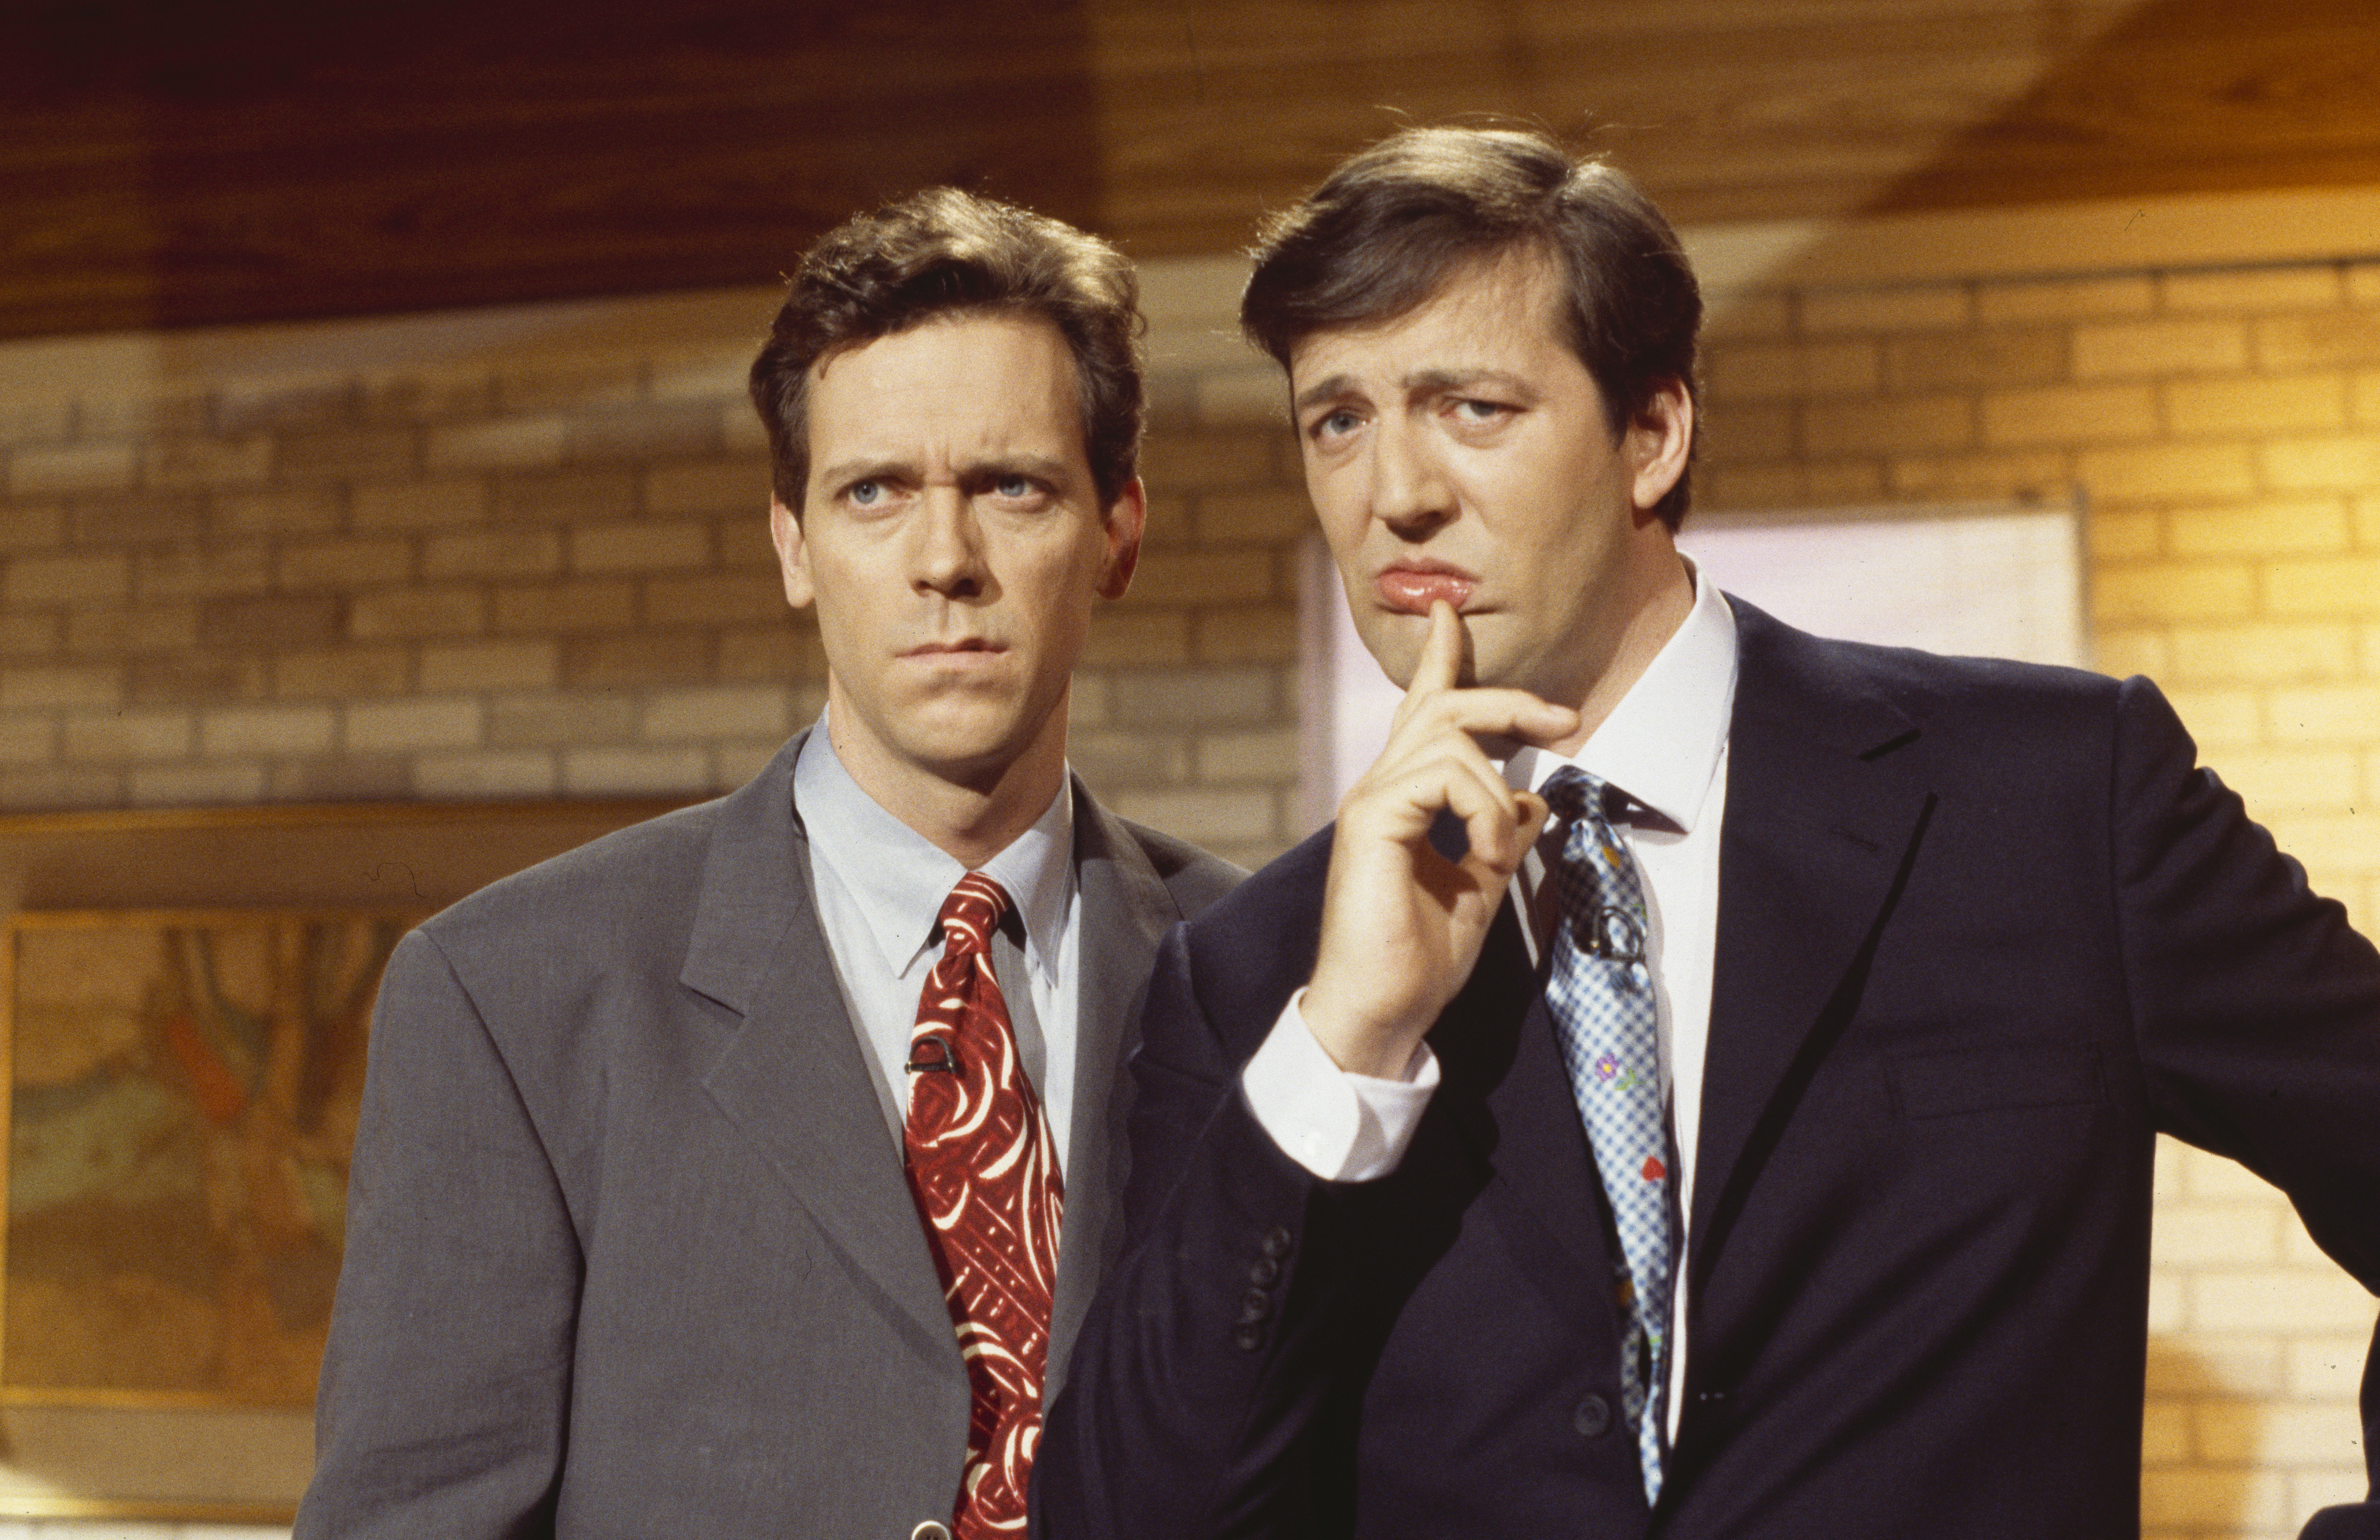 Hugh Laurie und Stephen Fry in einem Sketch aus der BBC-Fernsehserie "A Bit of Fry and Laurie" am 29. März 1994. | Quelle: Getty Images